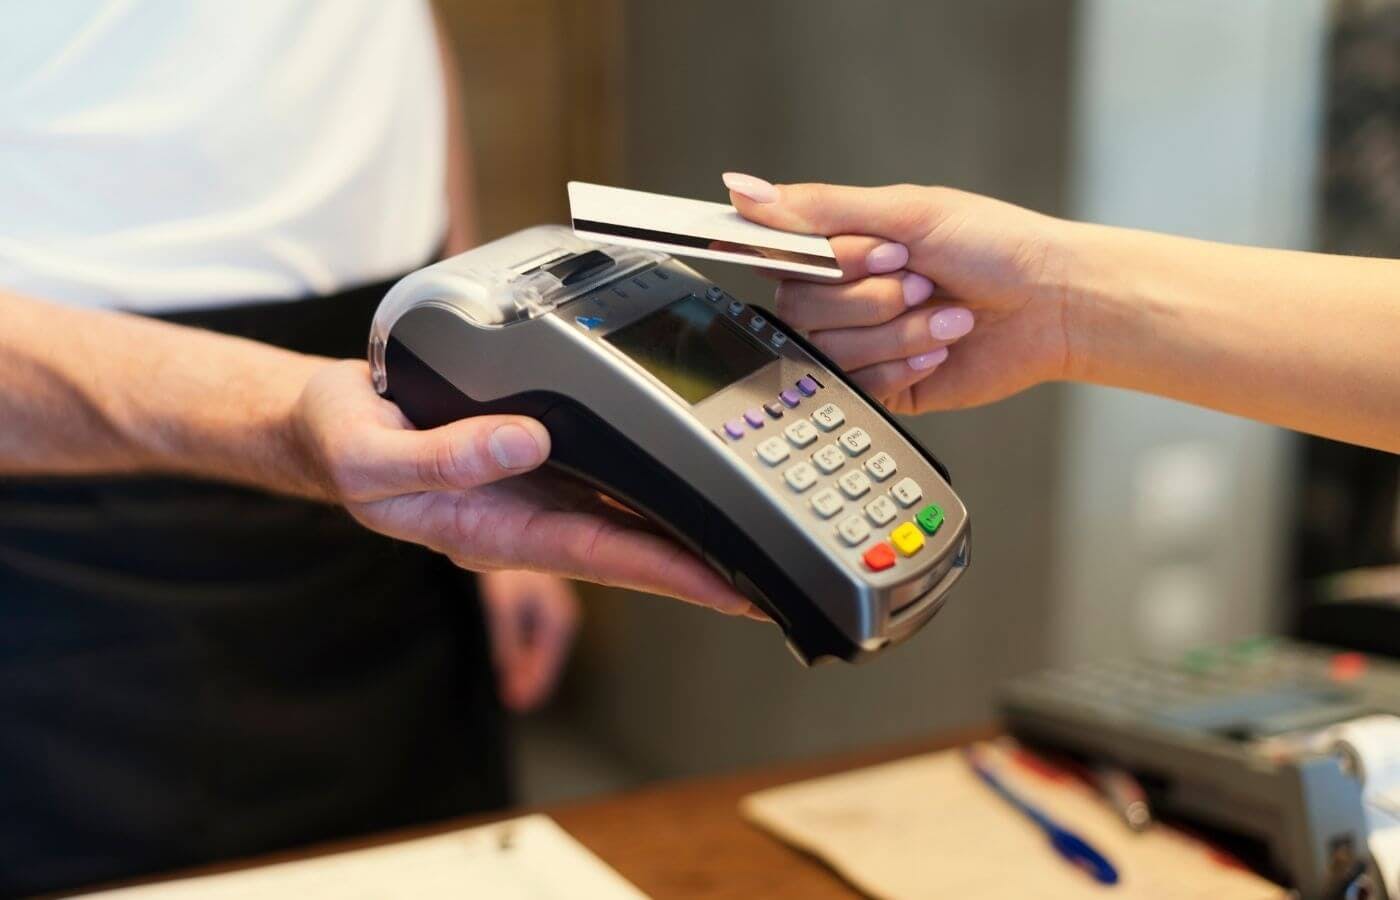 Cartão de crédito com cashback: como funciona?